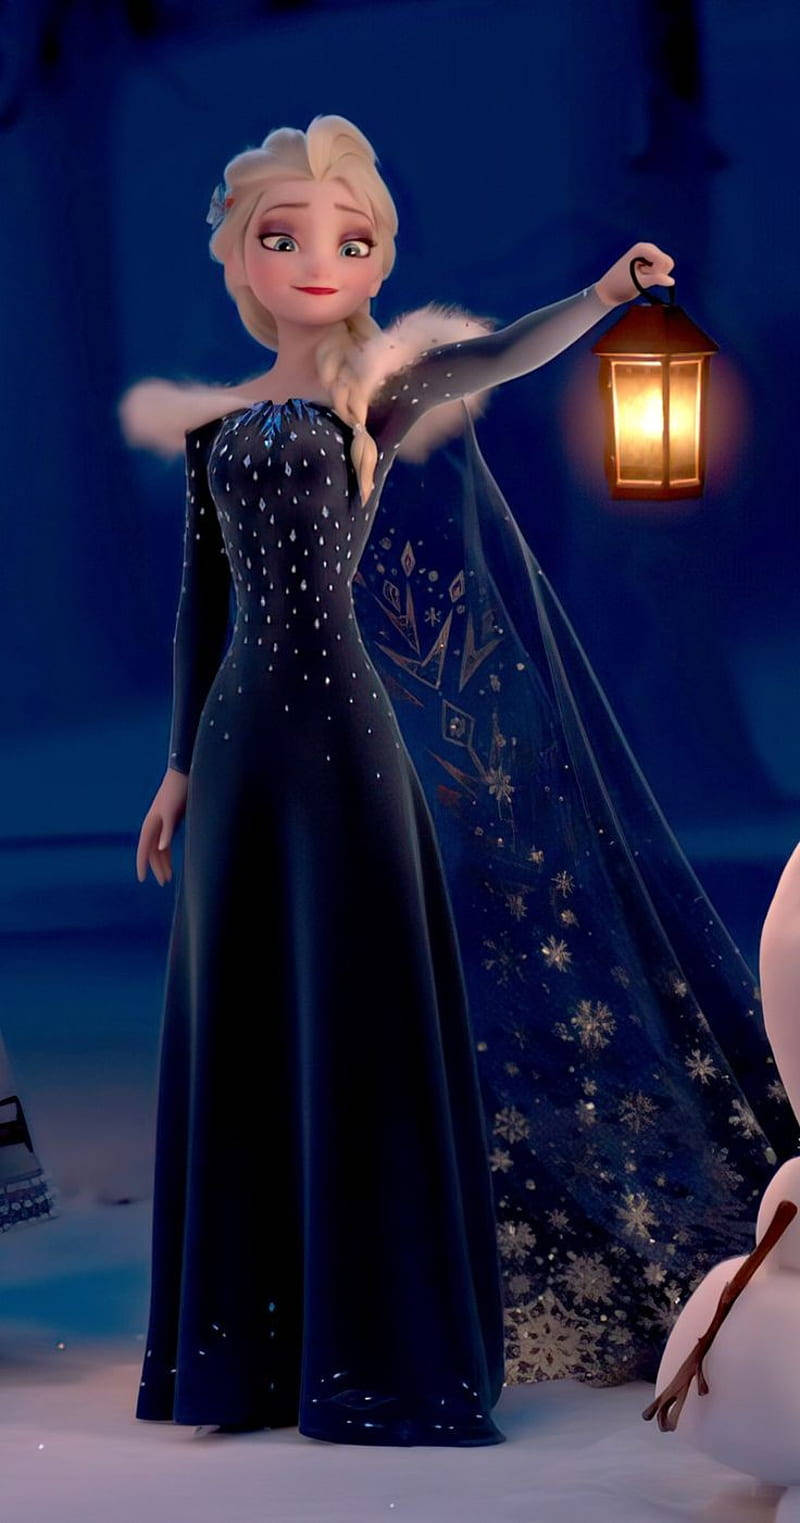 Elsa With Lamp Frozen 2 Wallpaper